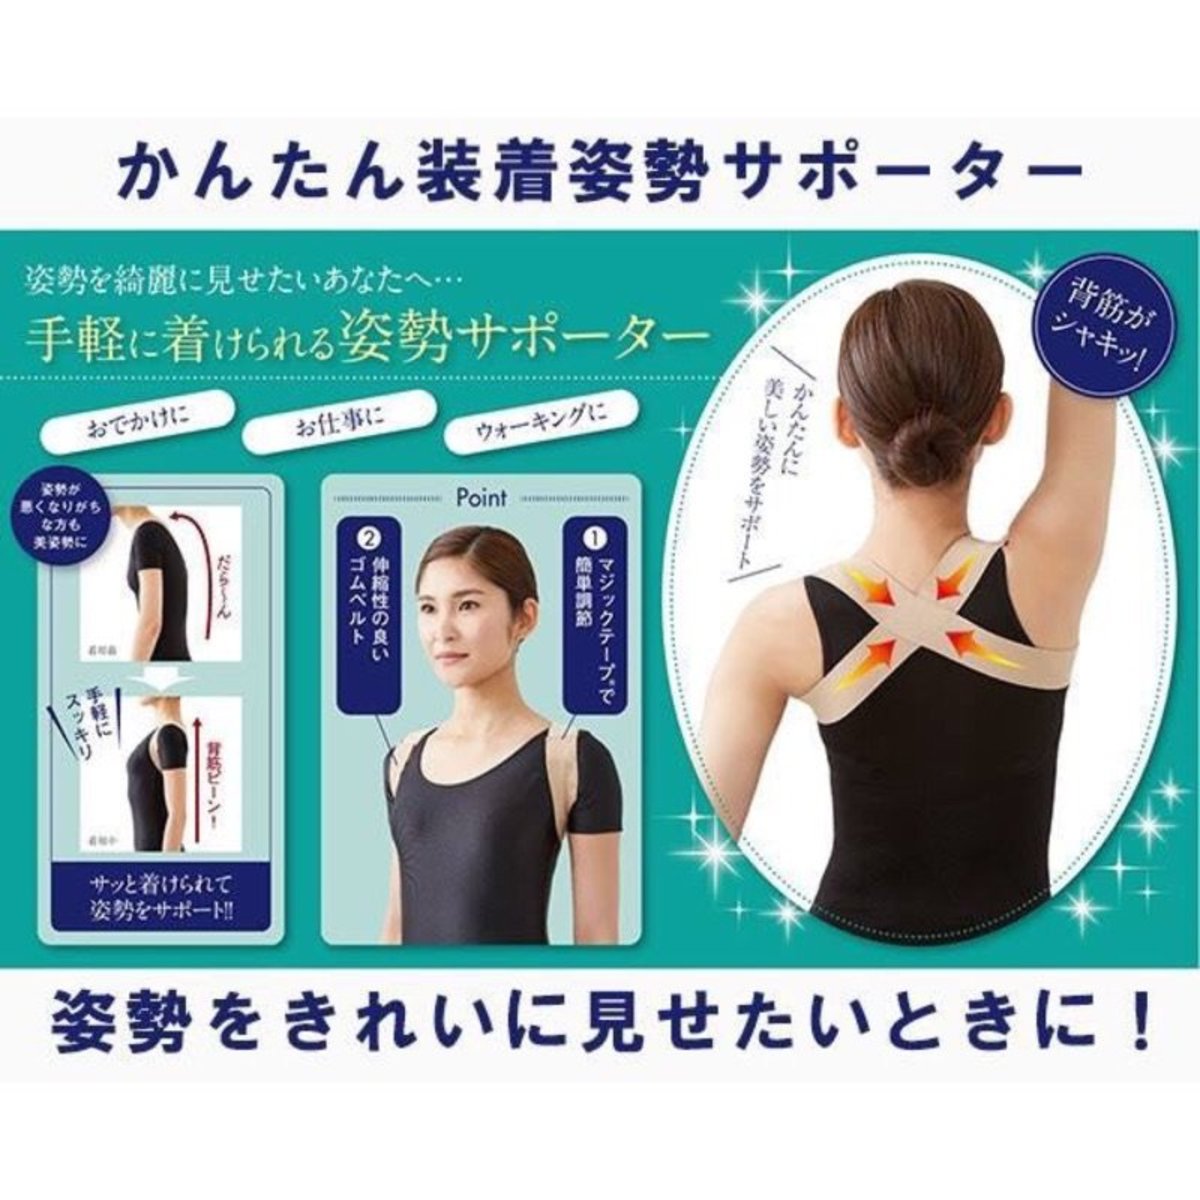 Japanese Cervin Health Posture Supporter♥M-L